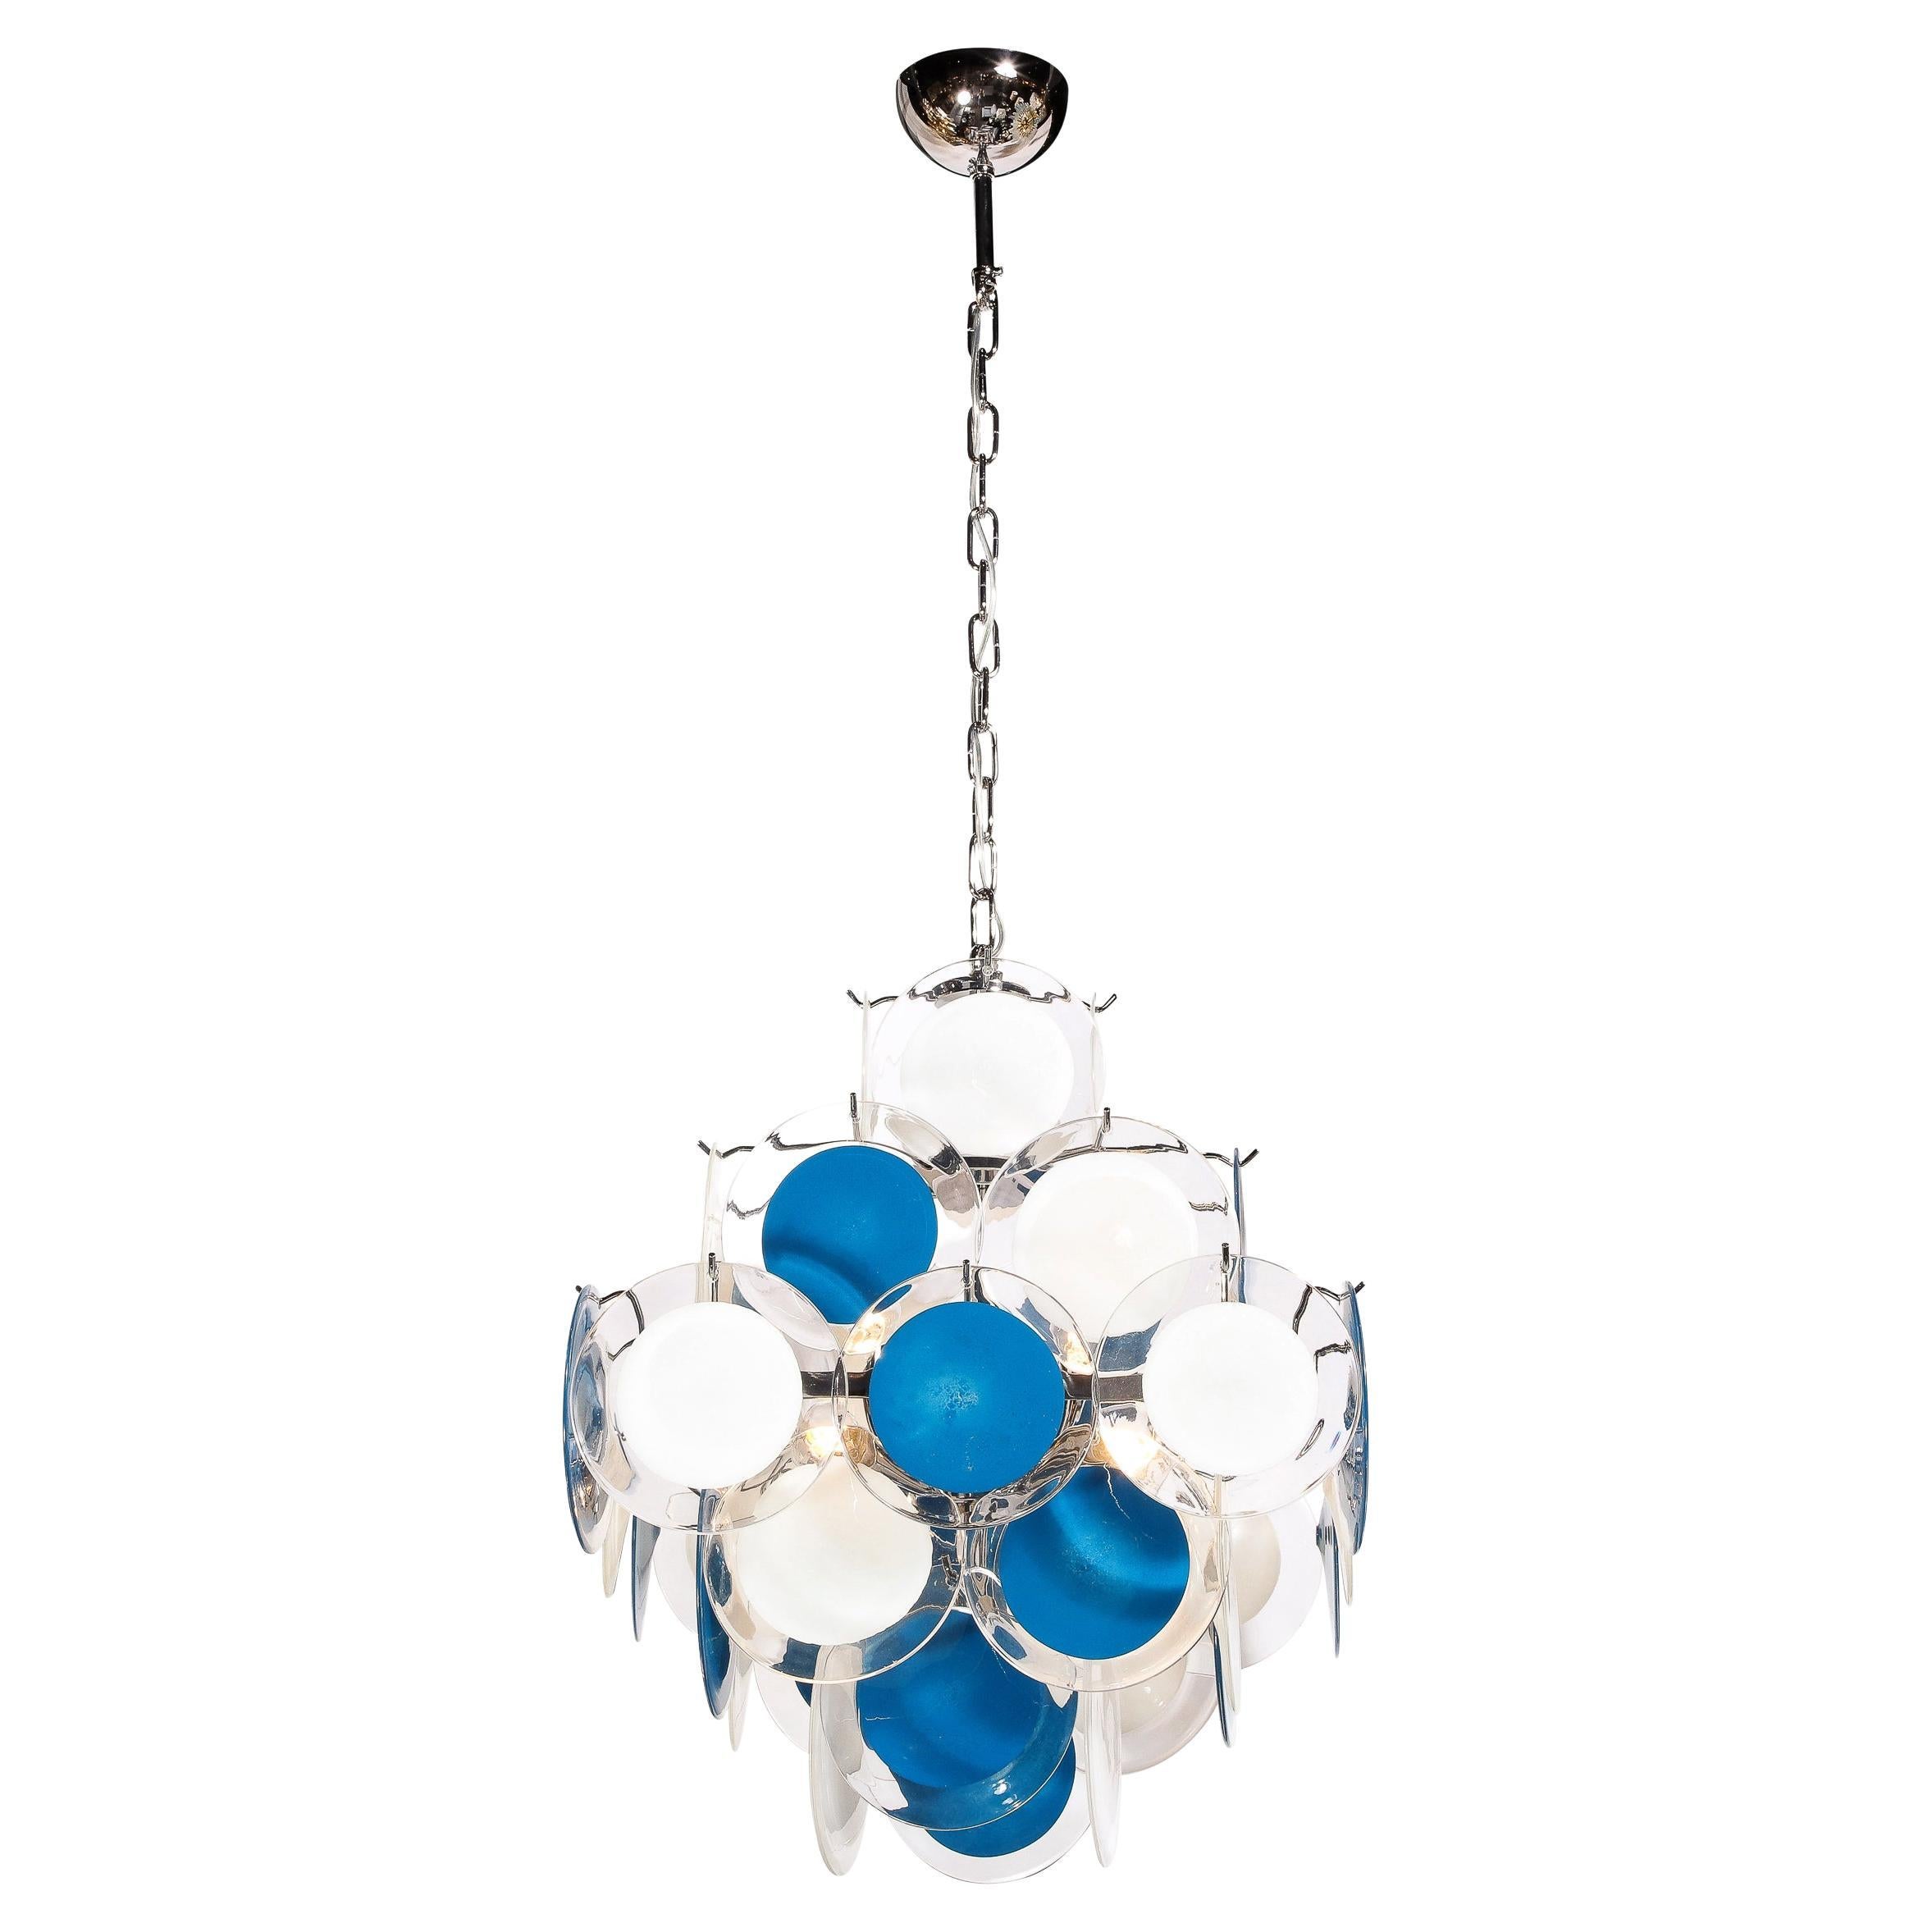 Pagodenkronleuchter aus Chrom und mundgeblasenen weißen und blauen Murano-Scheiben im modernistischen Stil